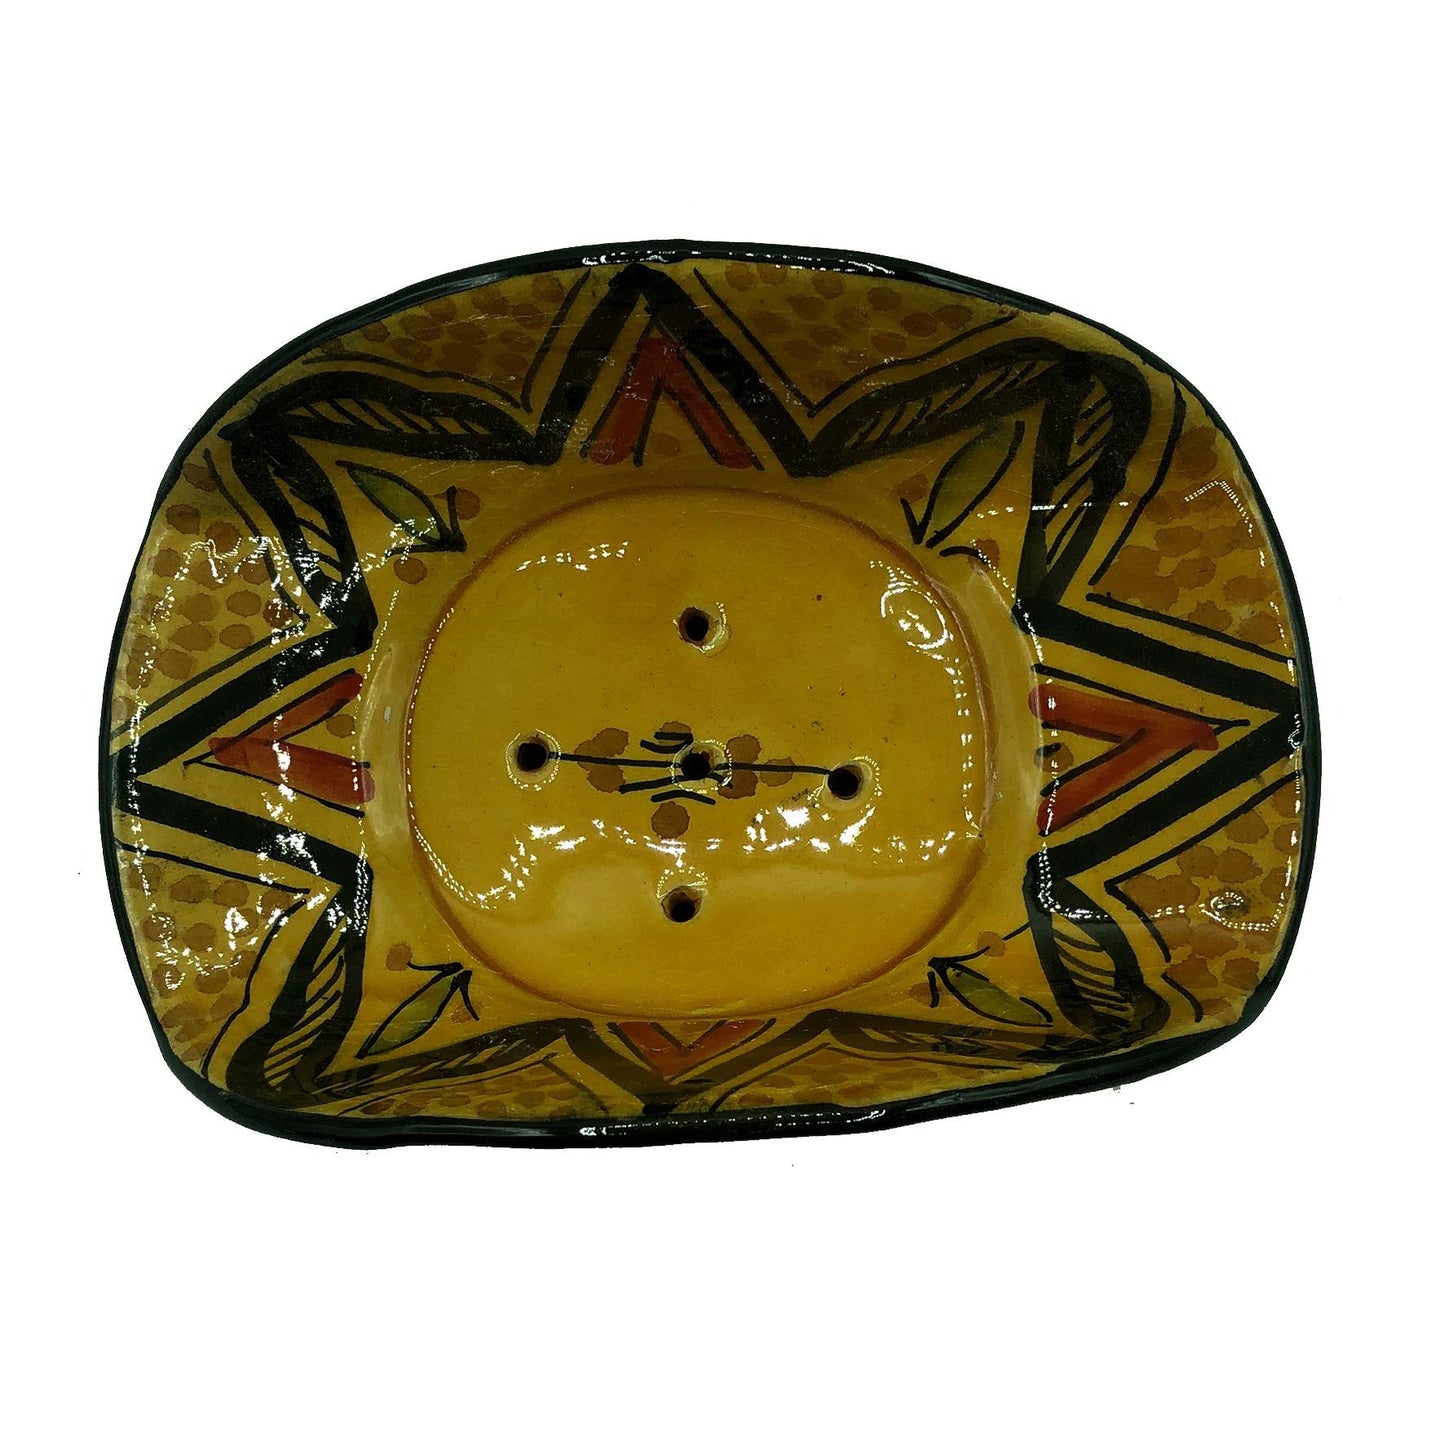 Arredamento Etnico Porta Sapone Ceramica Terracotta Artigiano Marocco 1904211005